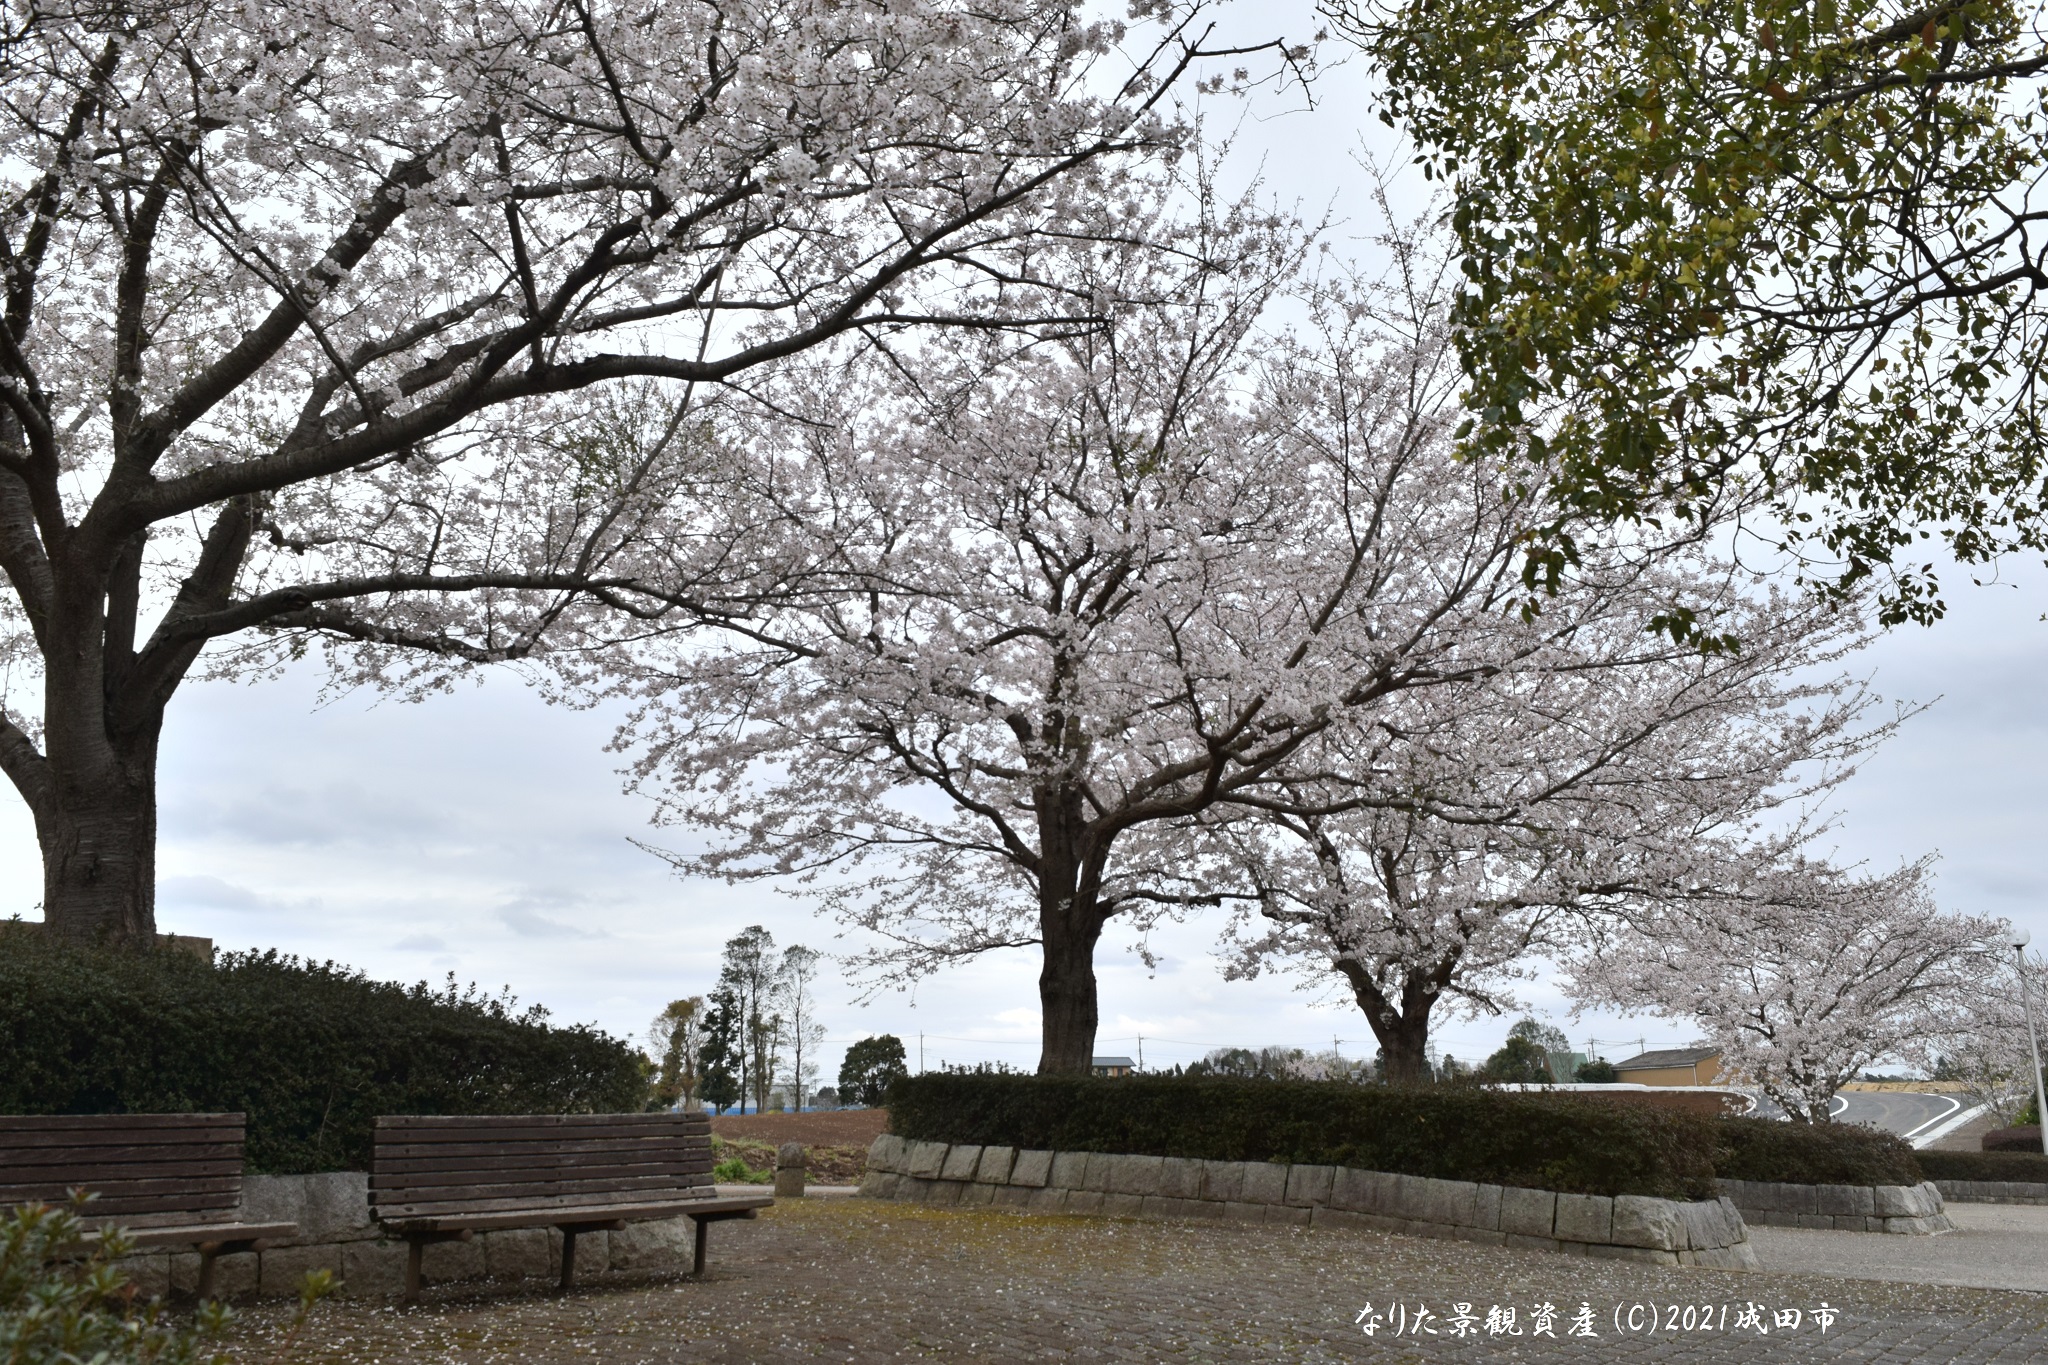 グリーンウォーターパークと桜の景観写真3